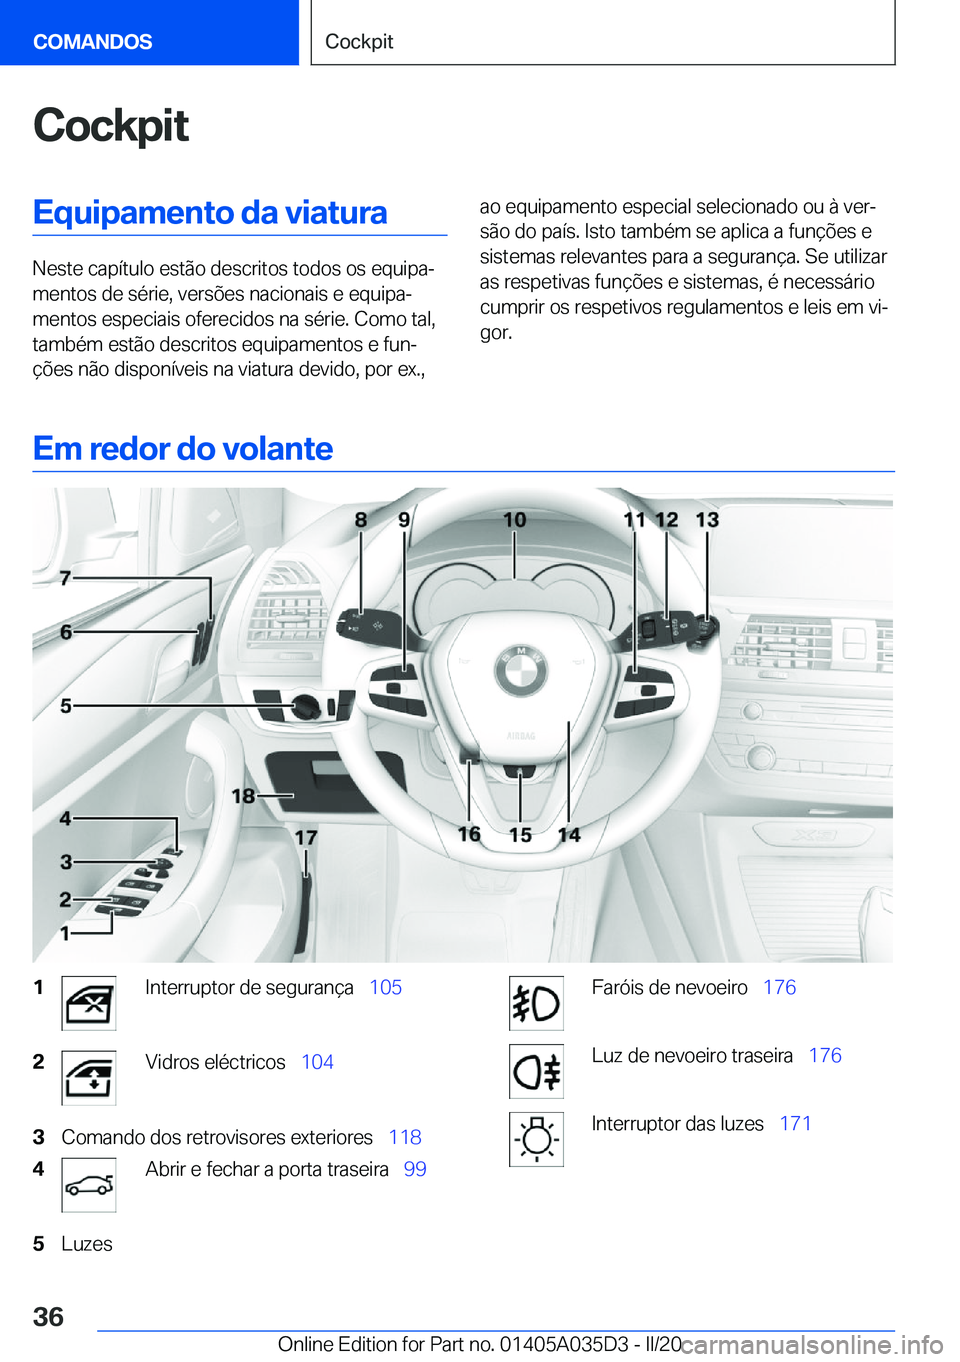 BMW X4 2020  Manual do condutor (in Portuguese) �C�o�c�k�p�i�t�E�q�u�i�p�a�m�e�n�t�o��d�a��v�i�a�t�u�r�a
�N�e�s�t�e��c�a�p�